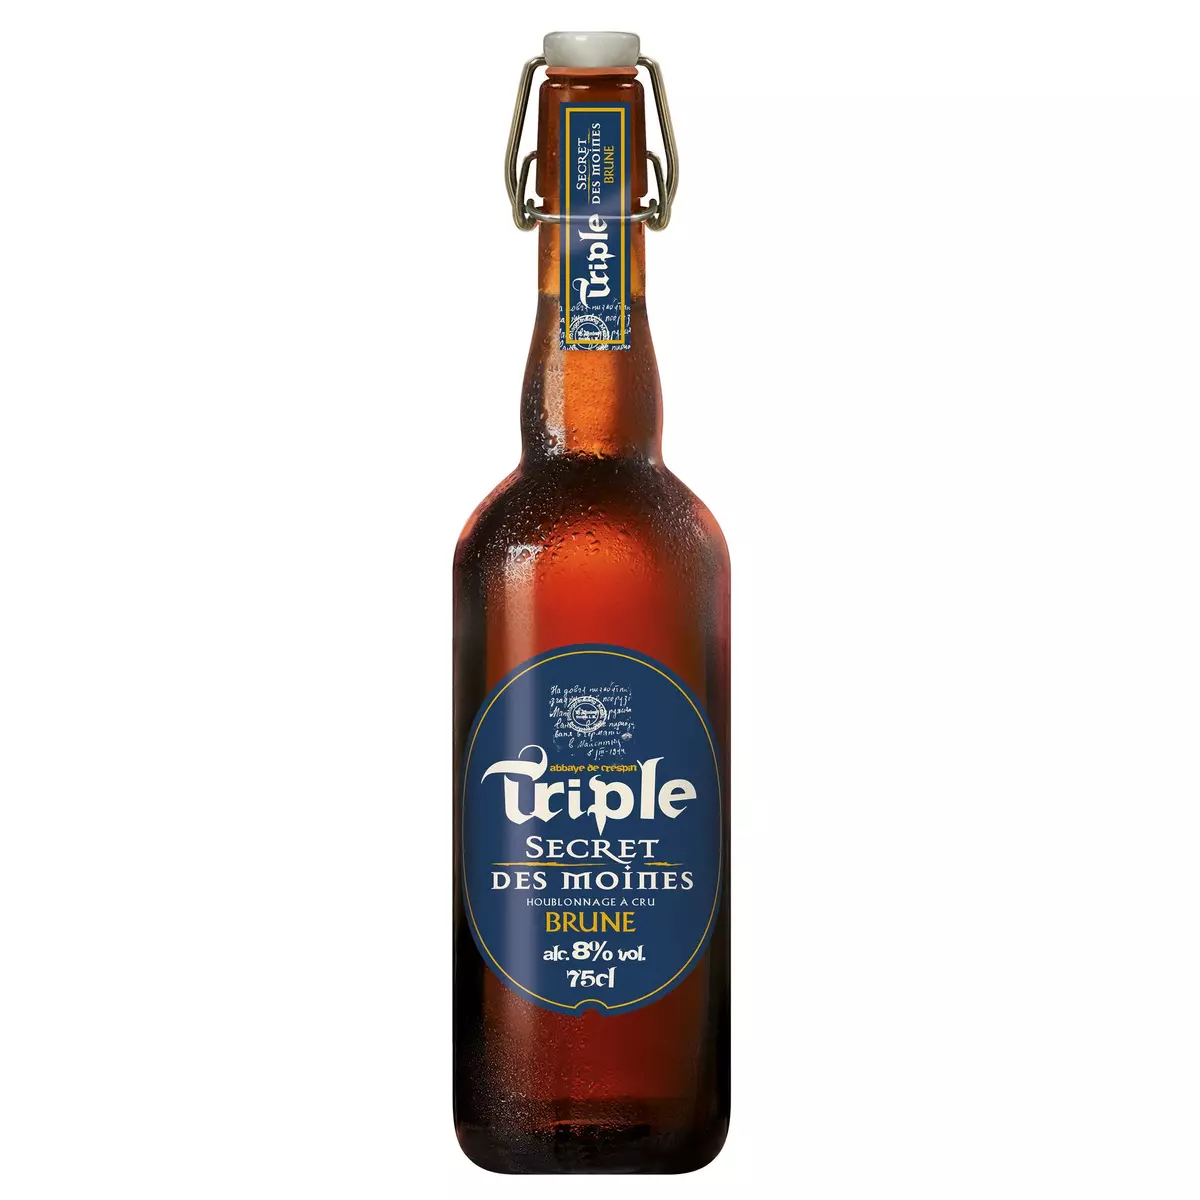 SECRET DES MOINES Bière brune triple 8% 75cl